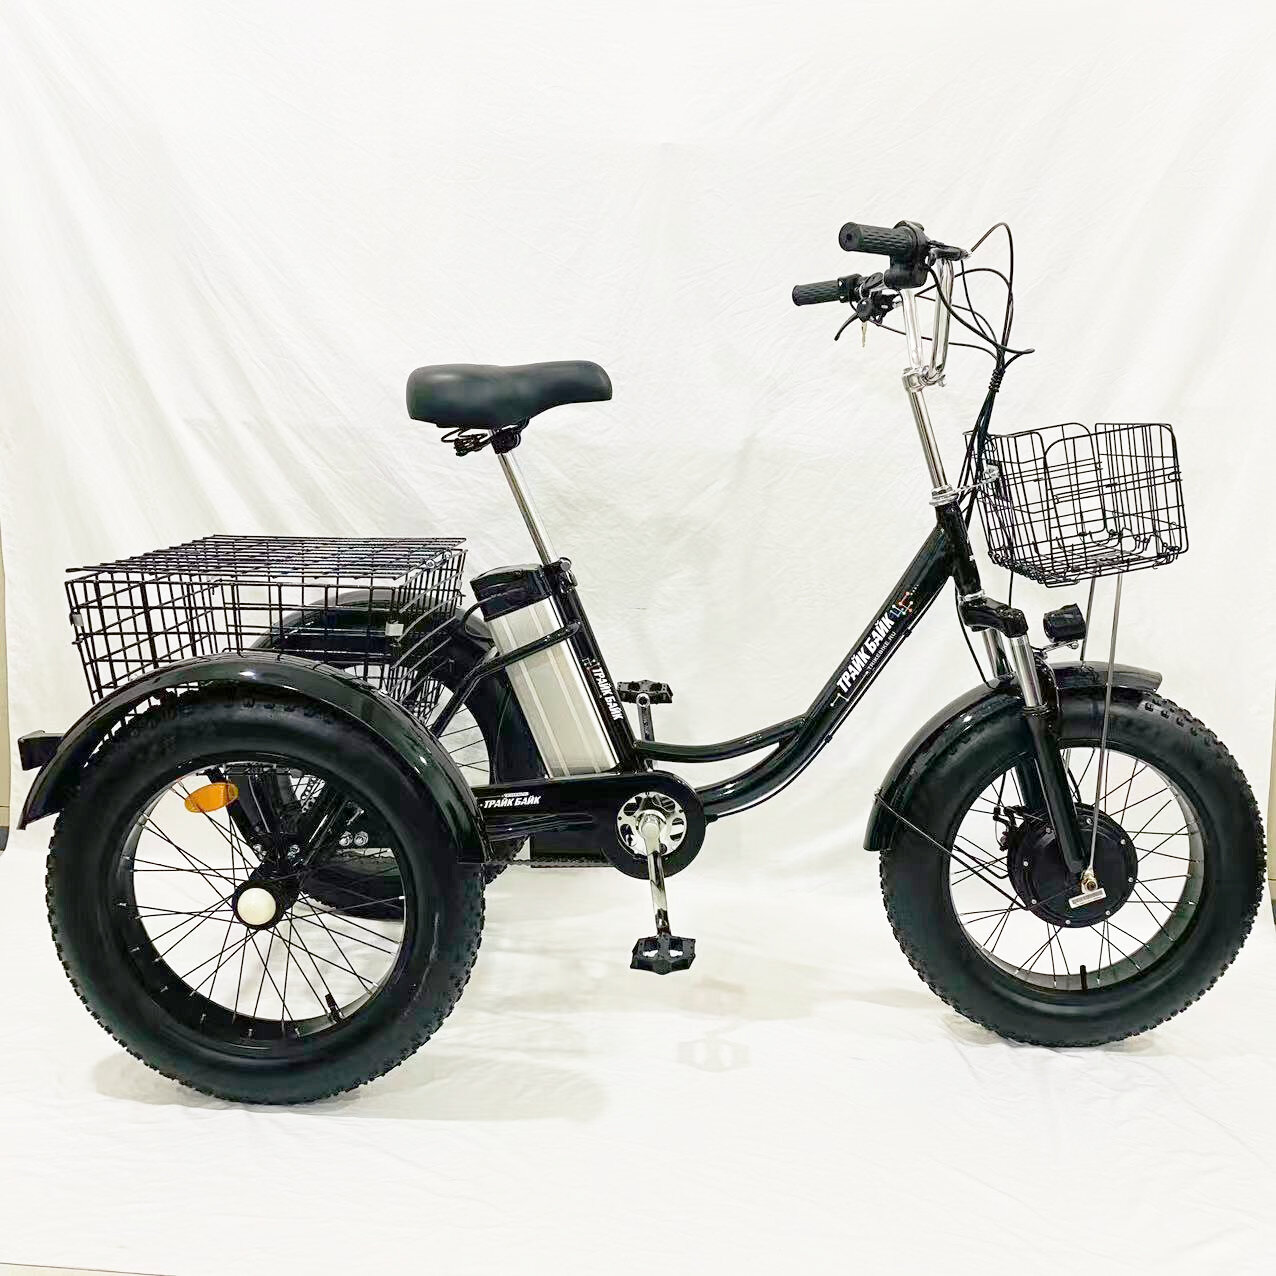 Электровелосипед (велосипед с электрическим двигателем) трехколесный фэтбайк для взрослых, всесезонный, тип "Зима-Лето", черный